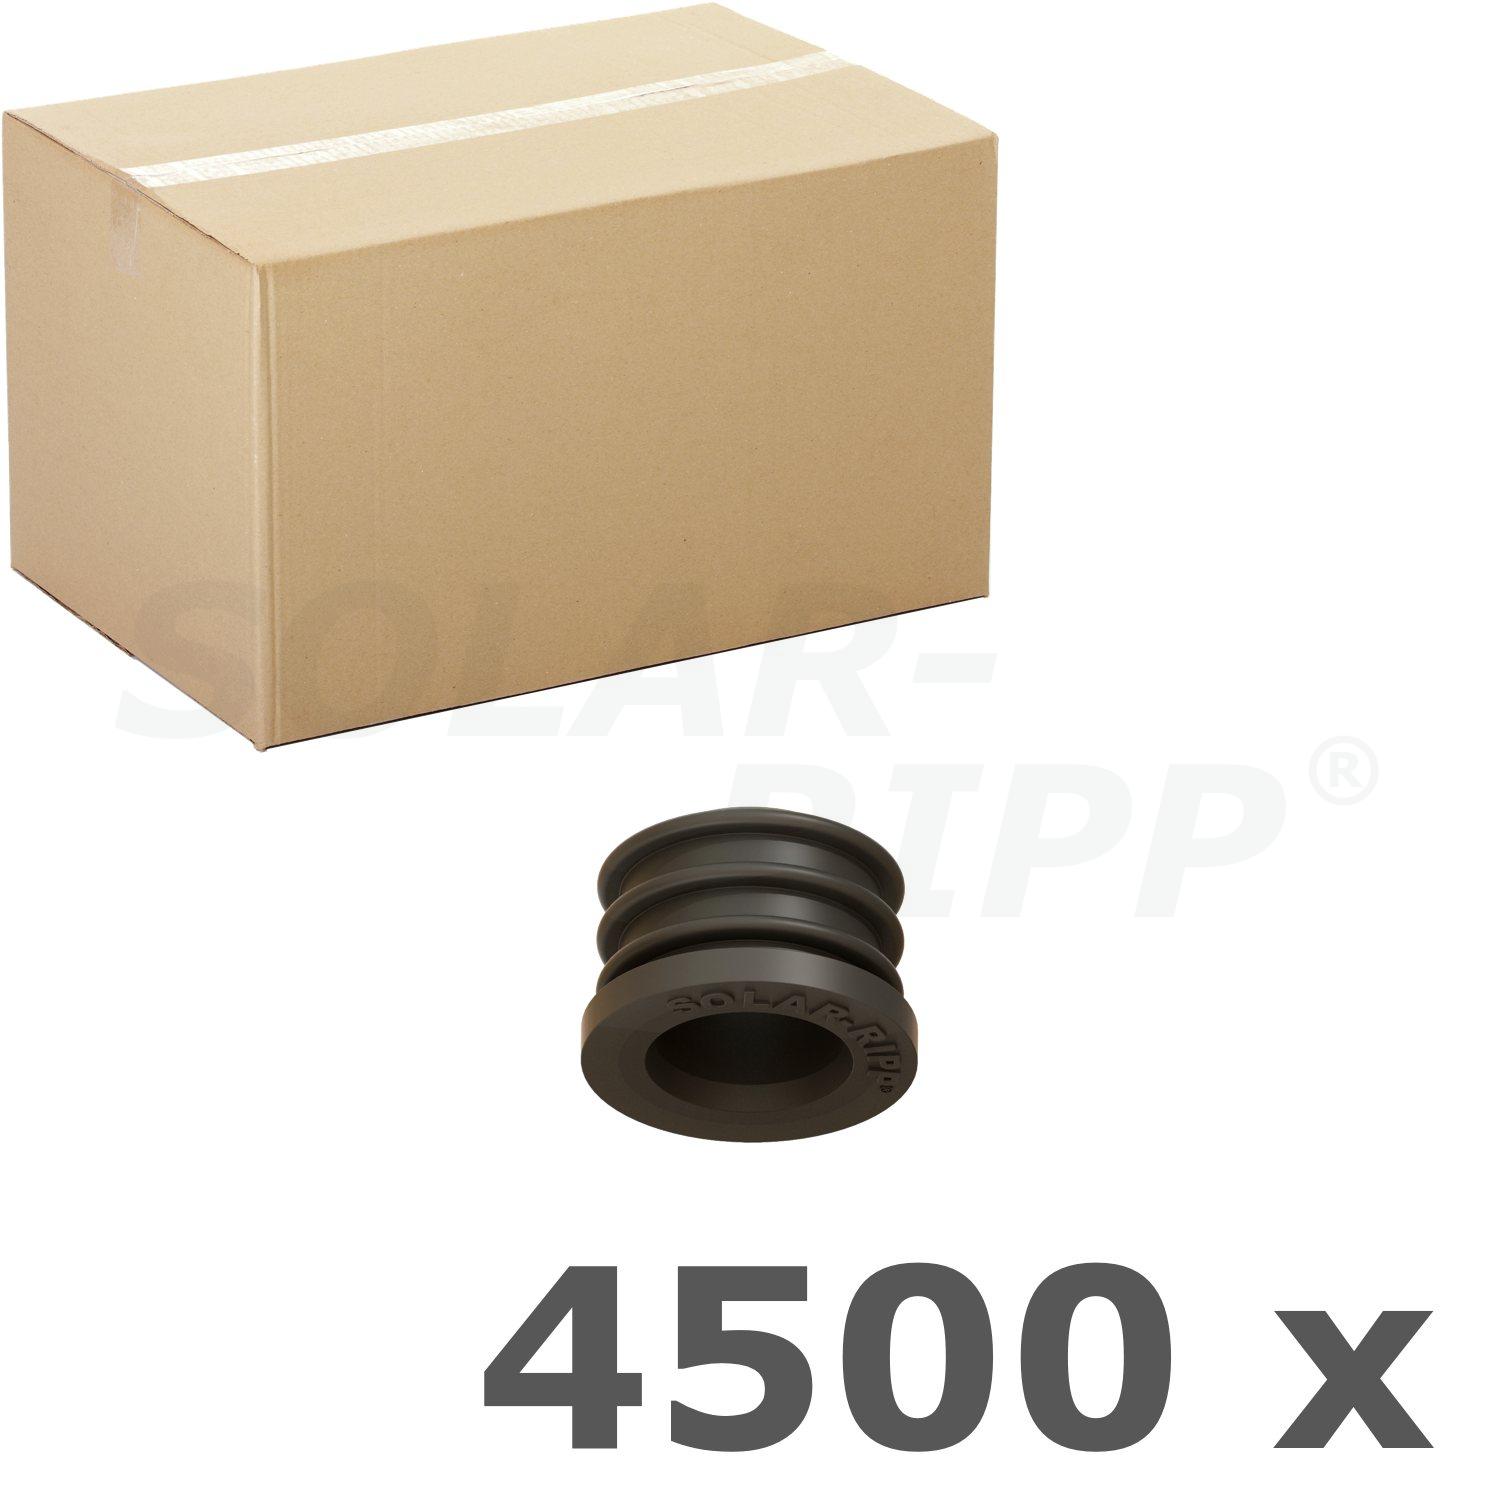 Sello SOLAR-RIPP ® SRX - caja con 4.500 uds.